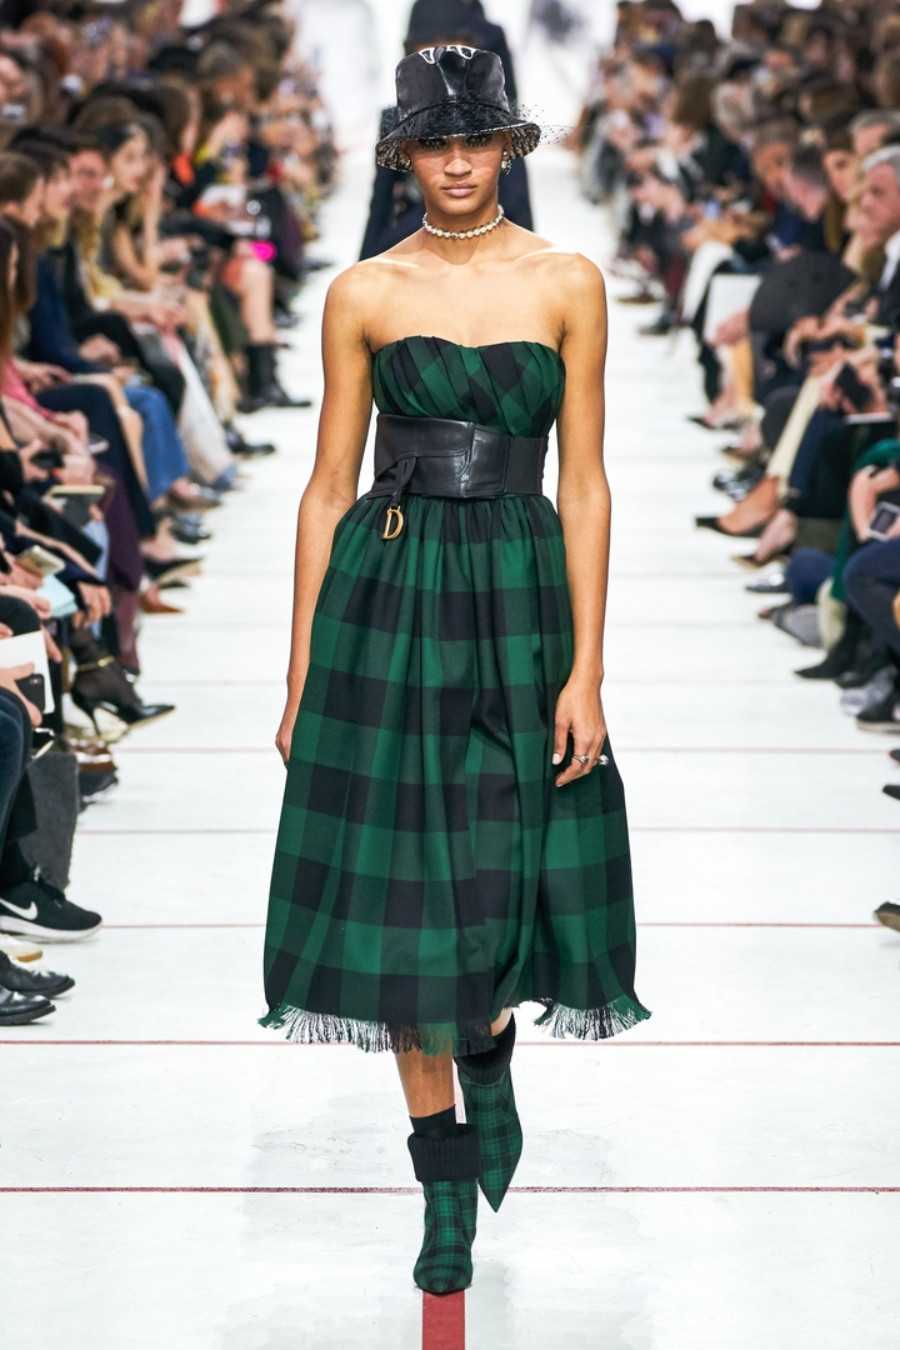 Фасоны платьев 2019: модные тенденции